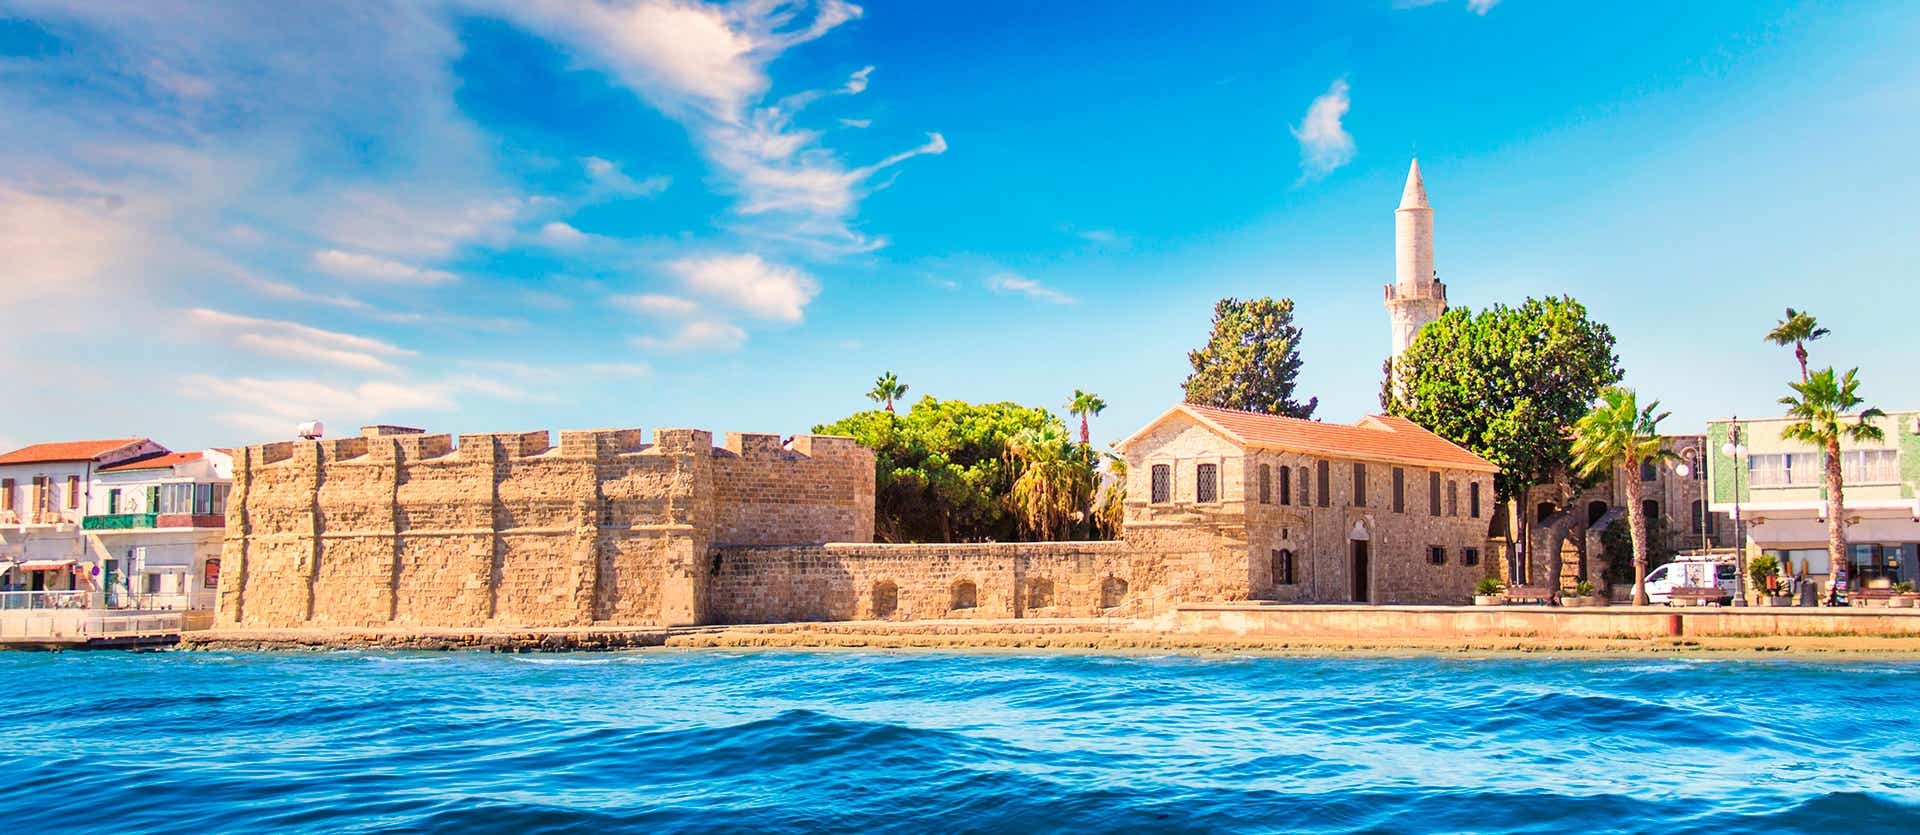 Larnaca Castle <span class="iconos separador"></span> Larnaca <span class="iconos separador"></span> Cyprus